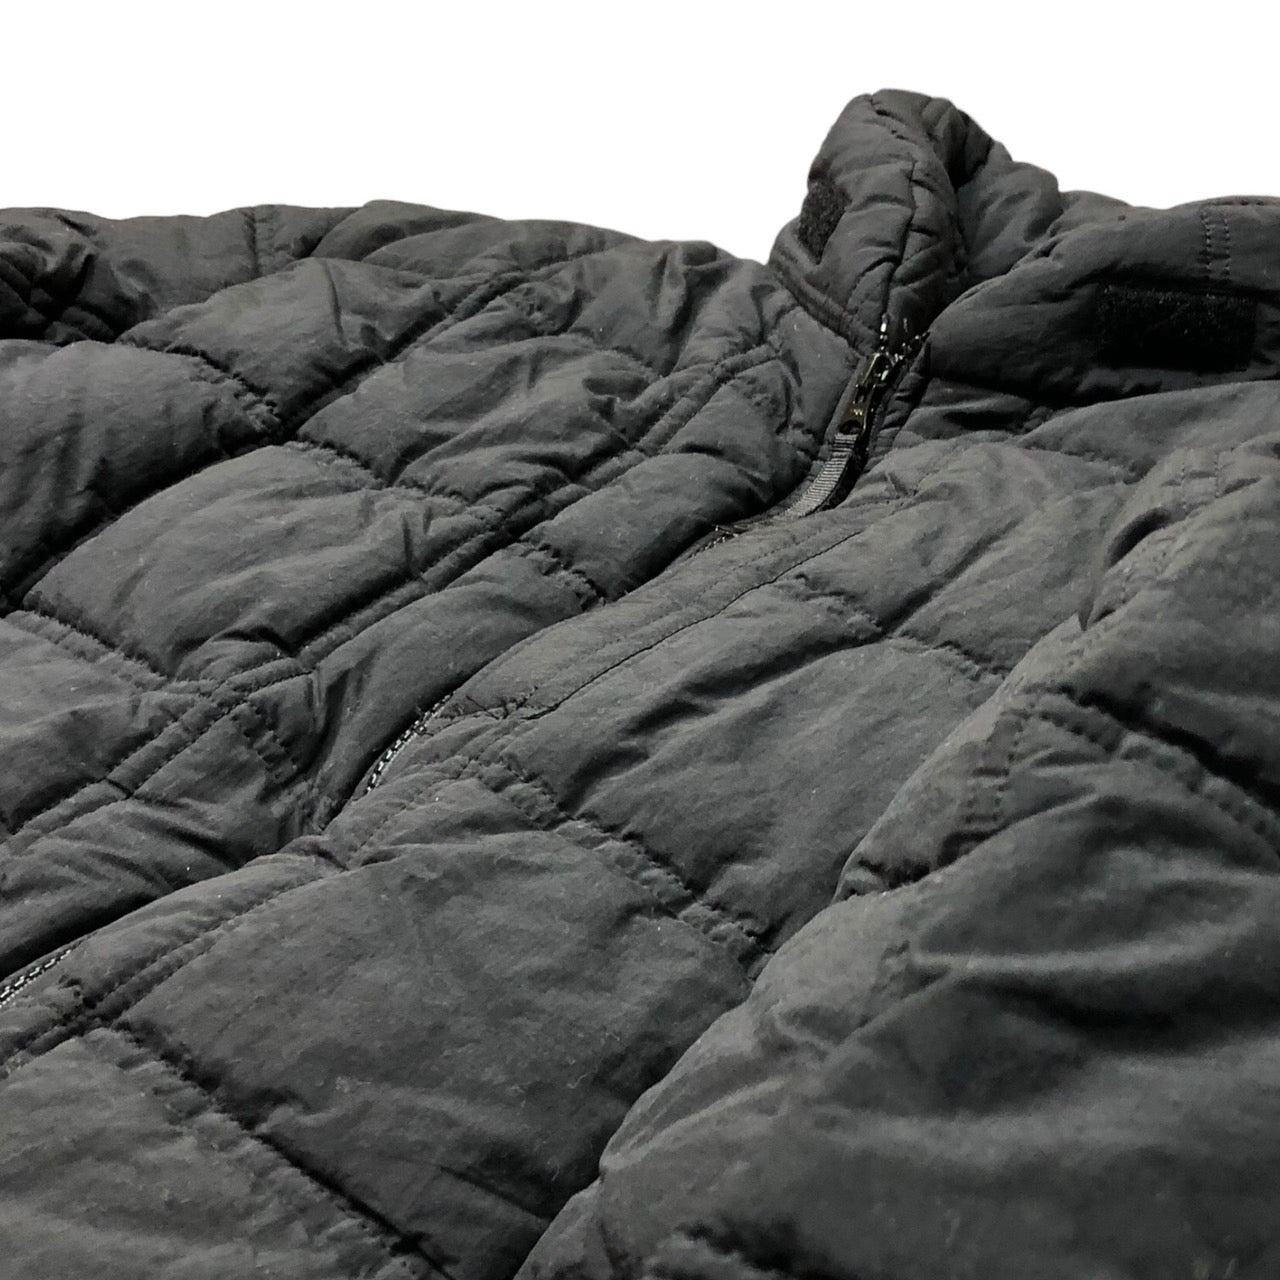 GOODENOUGH(グッドイナフ) 90’s quilted padded jacket キルティング 中綿 ジャケット ダウン SIZE M ブラック 00’s 90年代 初期タグ GDEH チンストラップ欠品